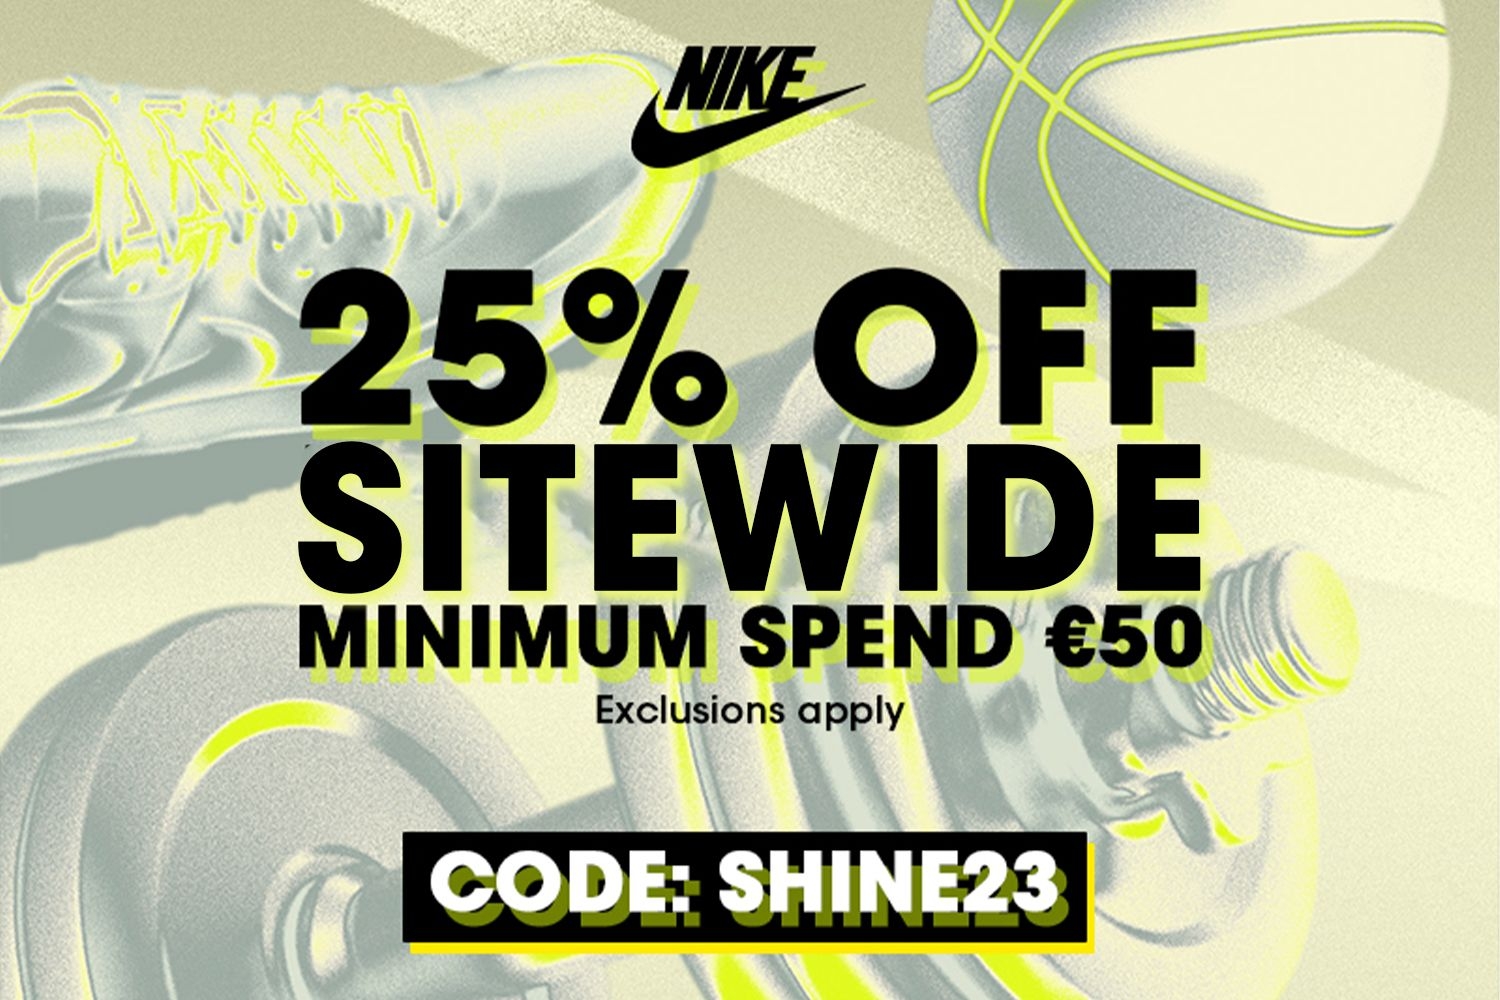 Nike kommt mit 25% Rabatt auf fast alles für Mitglieder